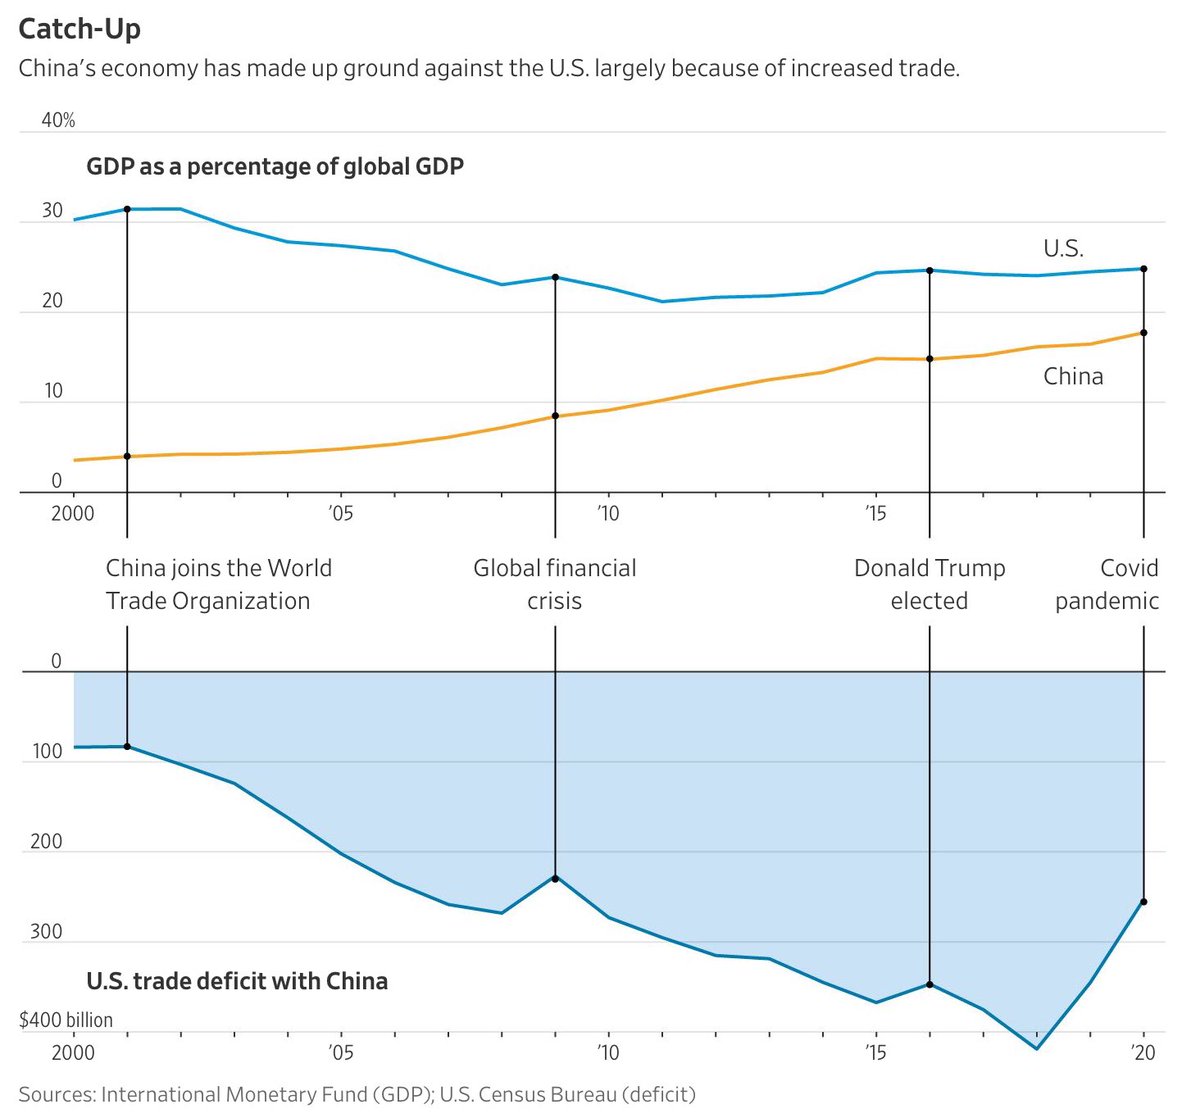 Comportamiento del #déficitcomercial de Estados Unidos frente a China desde el año 2000.
Parte Superior es el PIB de cada país (#EEUU y #China) frente al #PIBGlobal.
Parte inferior muestra la evolución del déficit Estadounidense.
@IMFNews 
@uscensusbureau